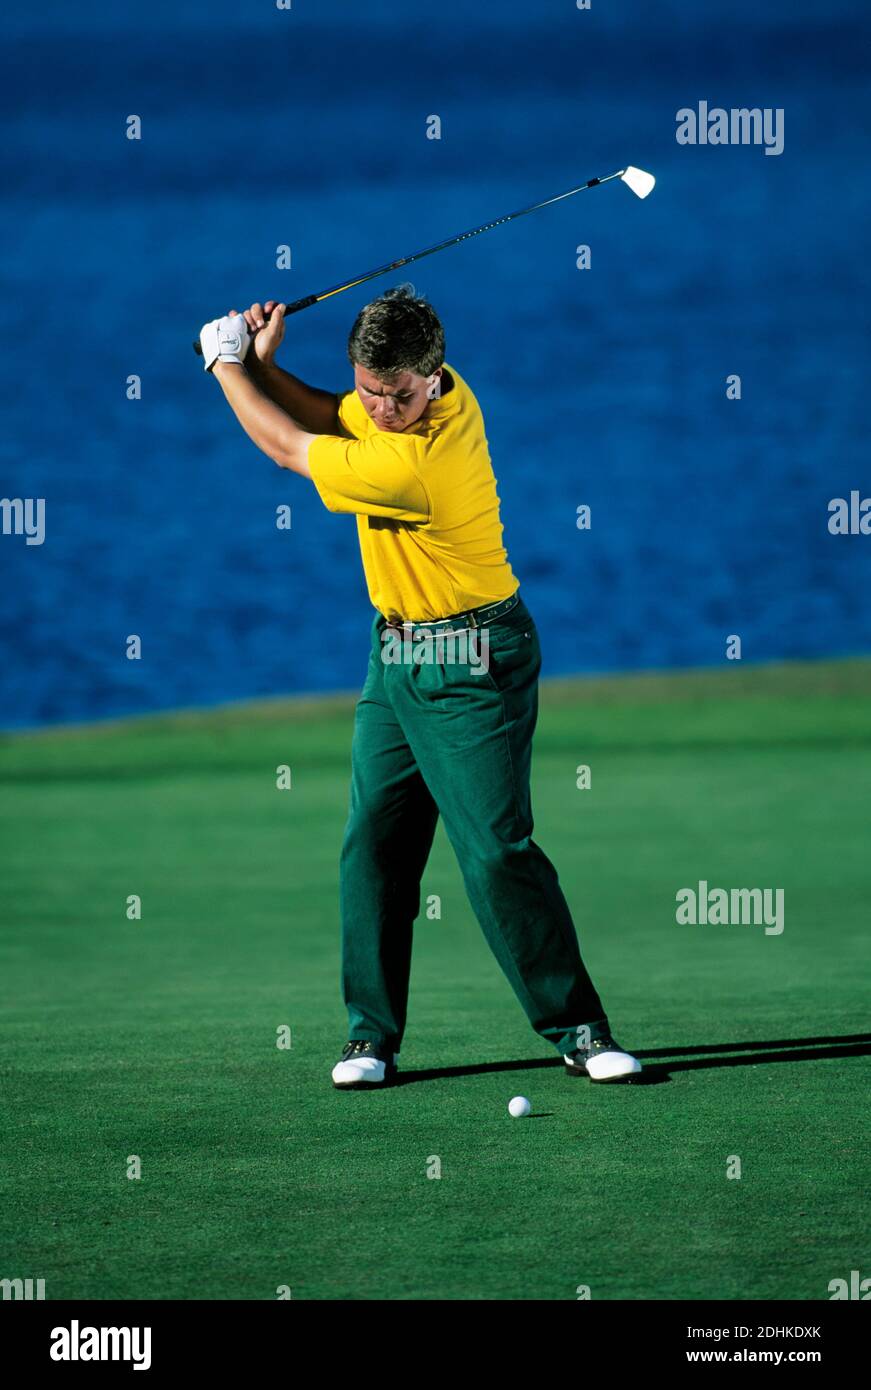 Simon Holmes, entrenador profesional de golf para los jugadores de gira, demostrando la técnica de backswing. Miami, Florida, EE.UU. Foto de stock